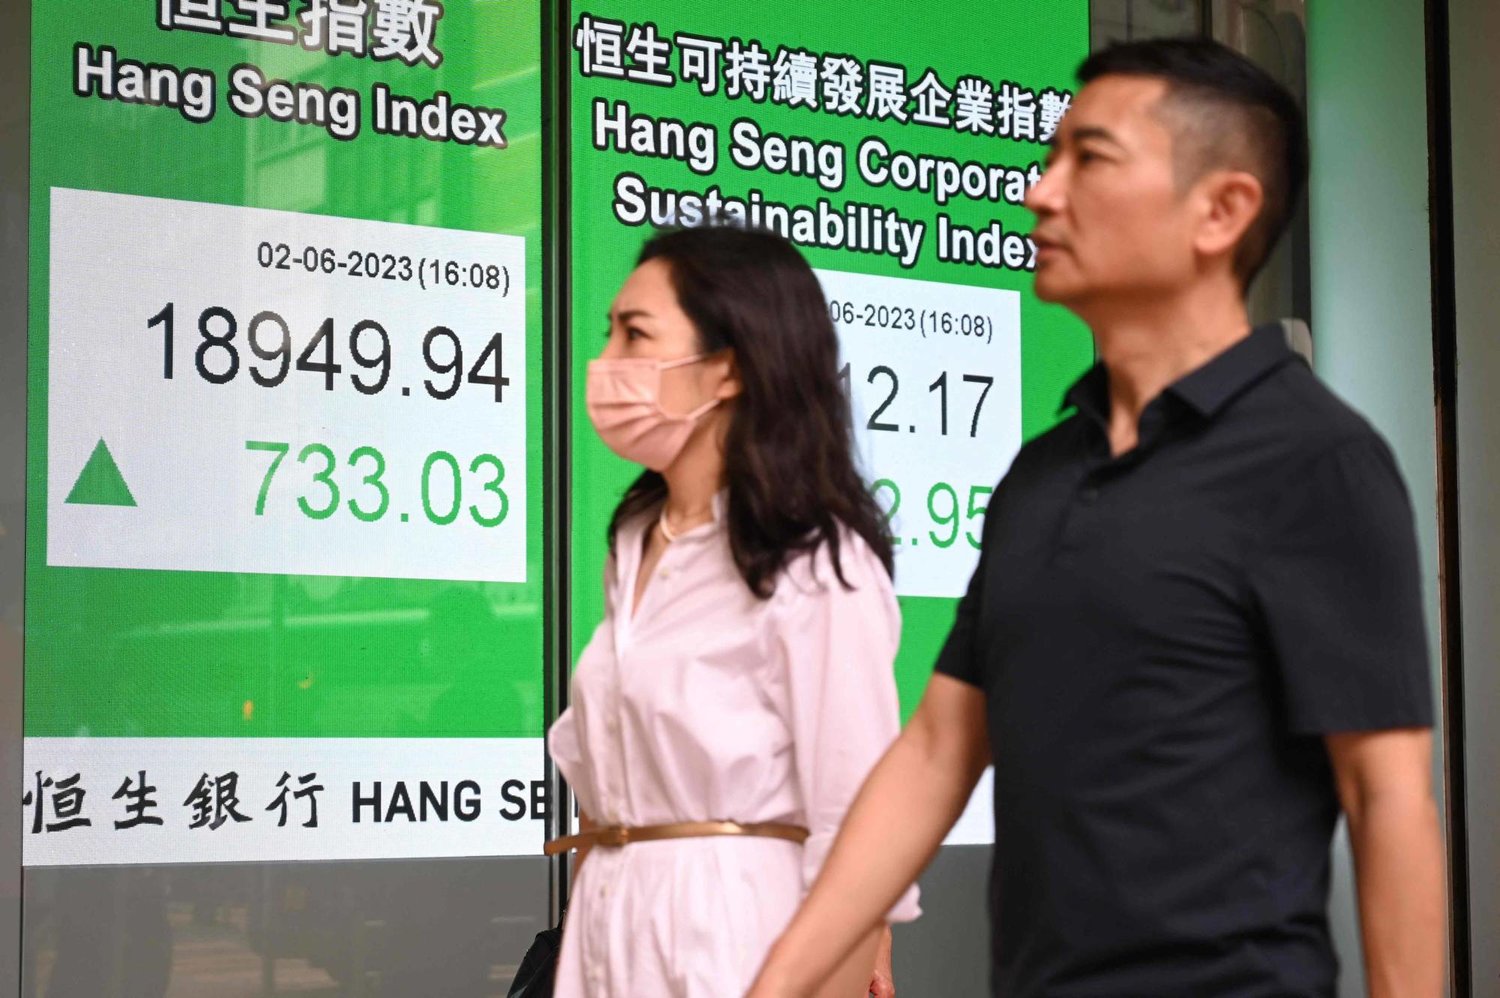 رجل وامرأة يسيران أمام شاشة تعرض مؤشر هانغ سينغ الرئيسي في بورصة هونغ كونغ (أ ف ب)